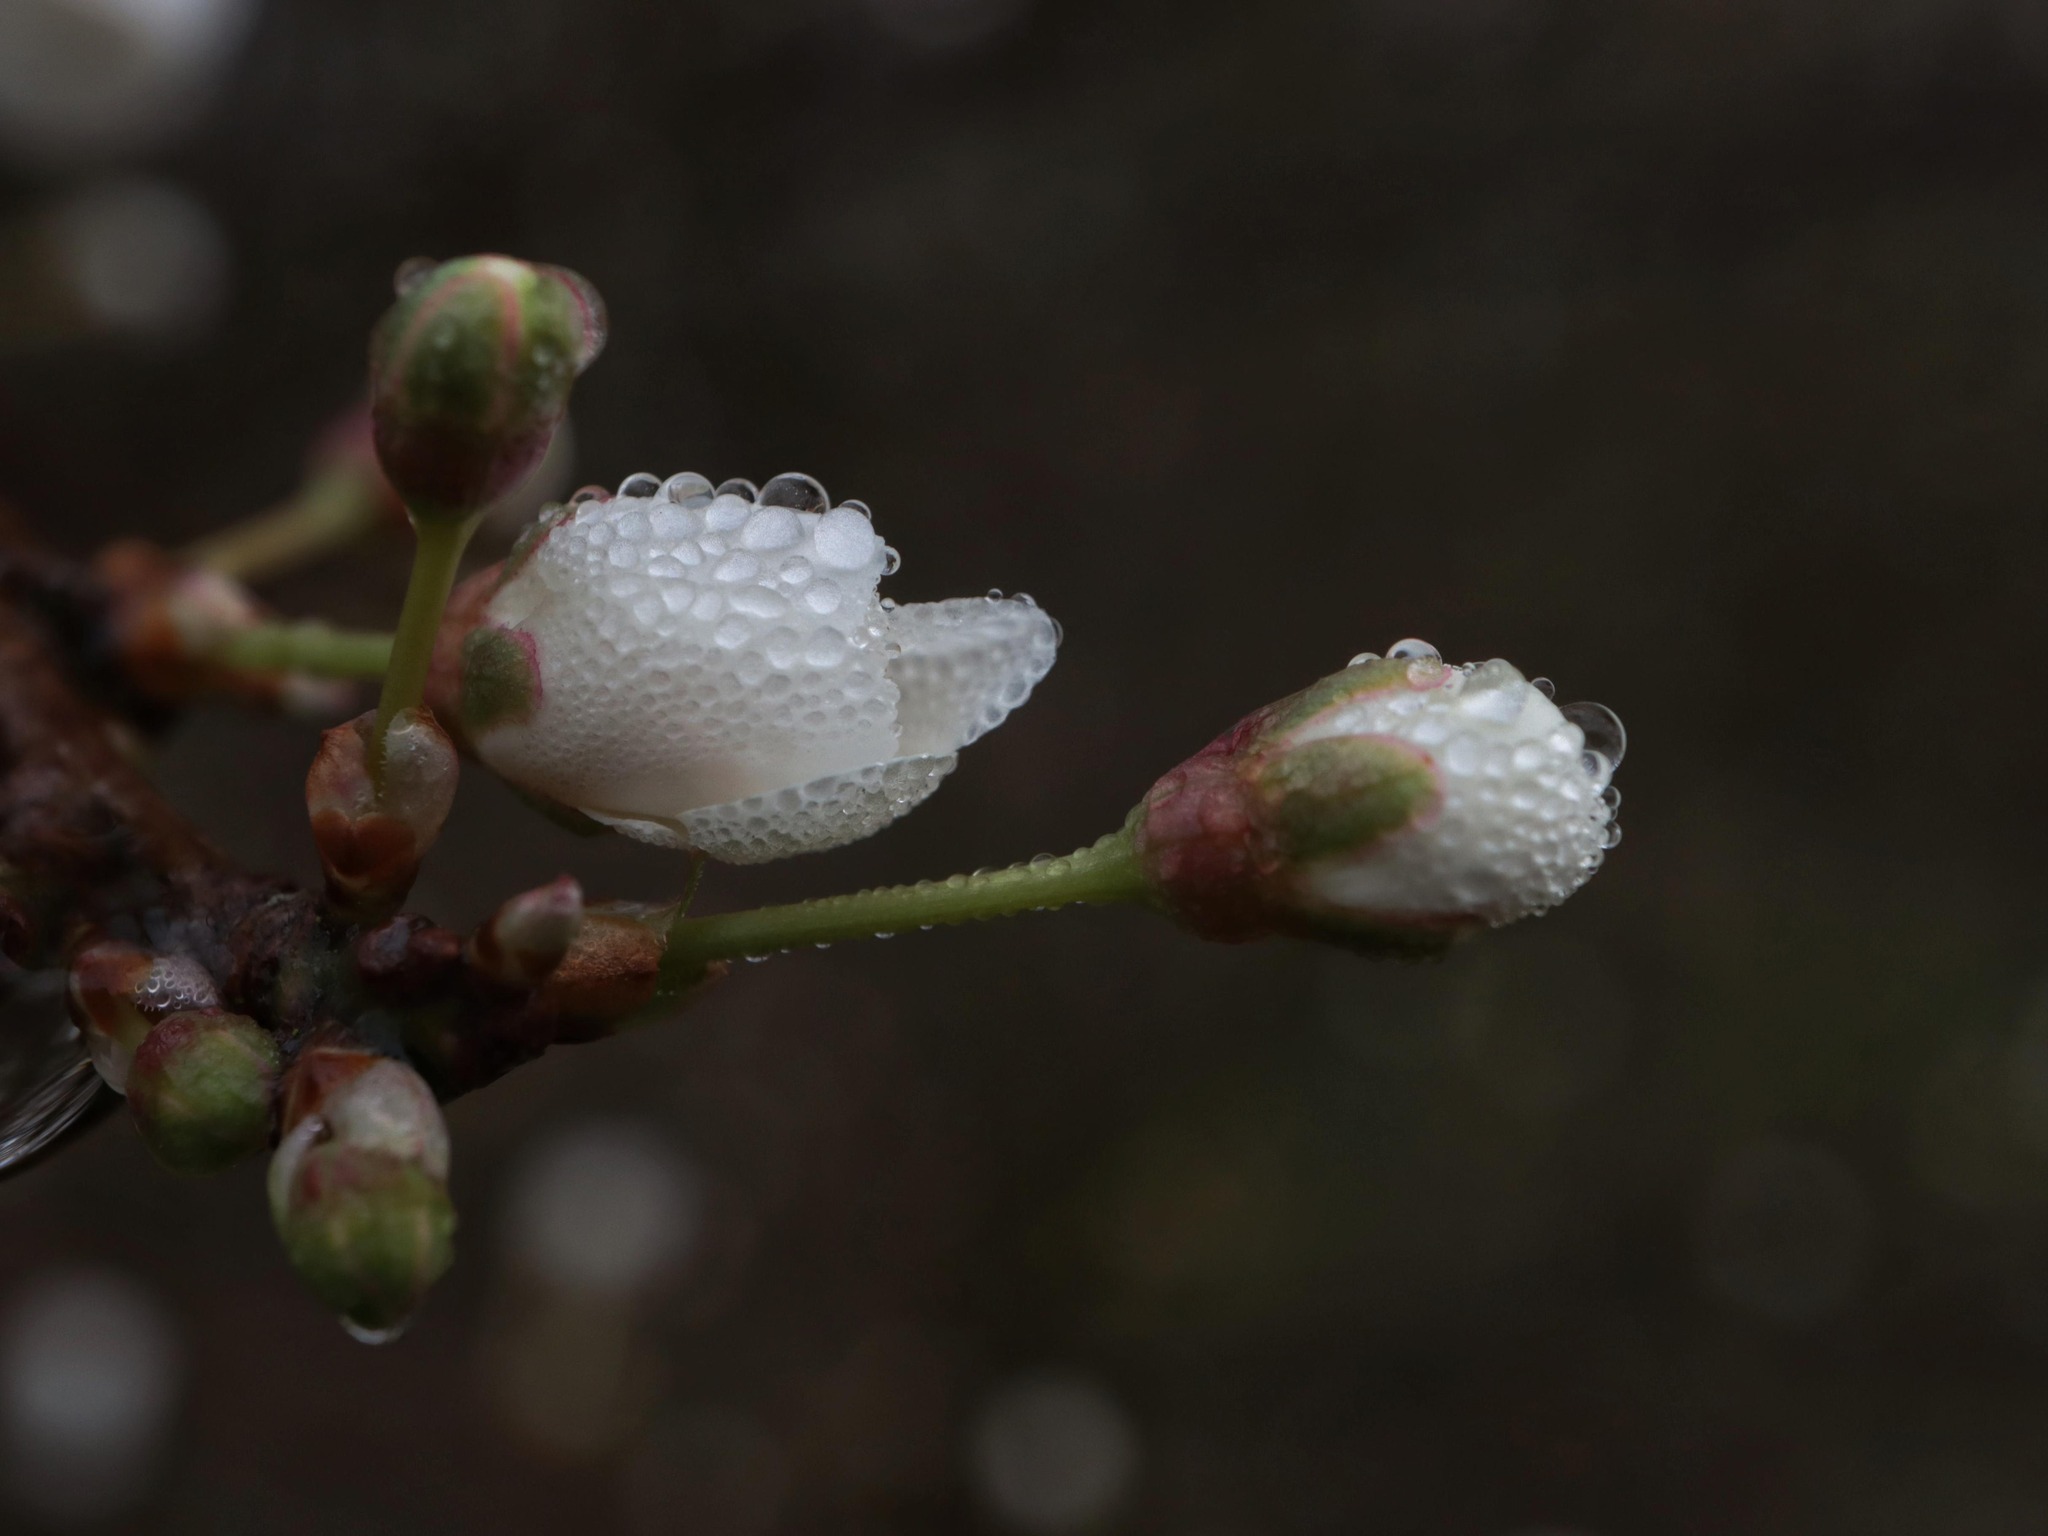 Raindrops on fresh buds by Matt Calveley